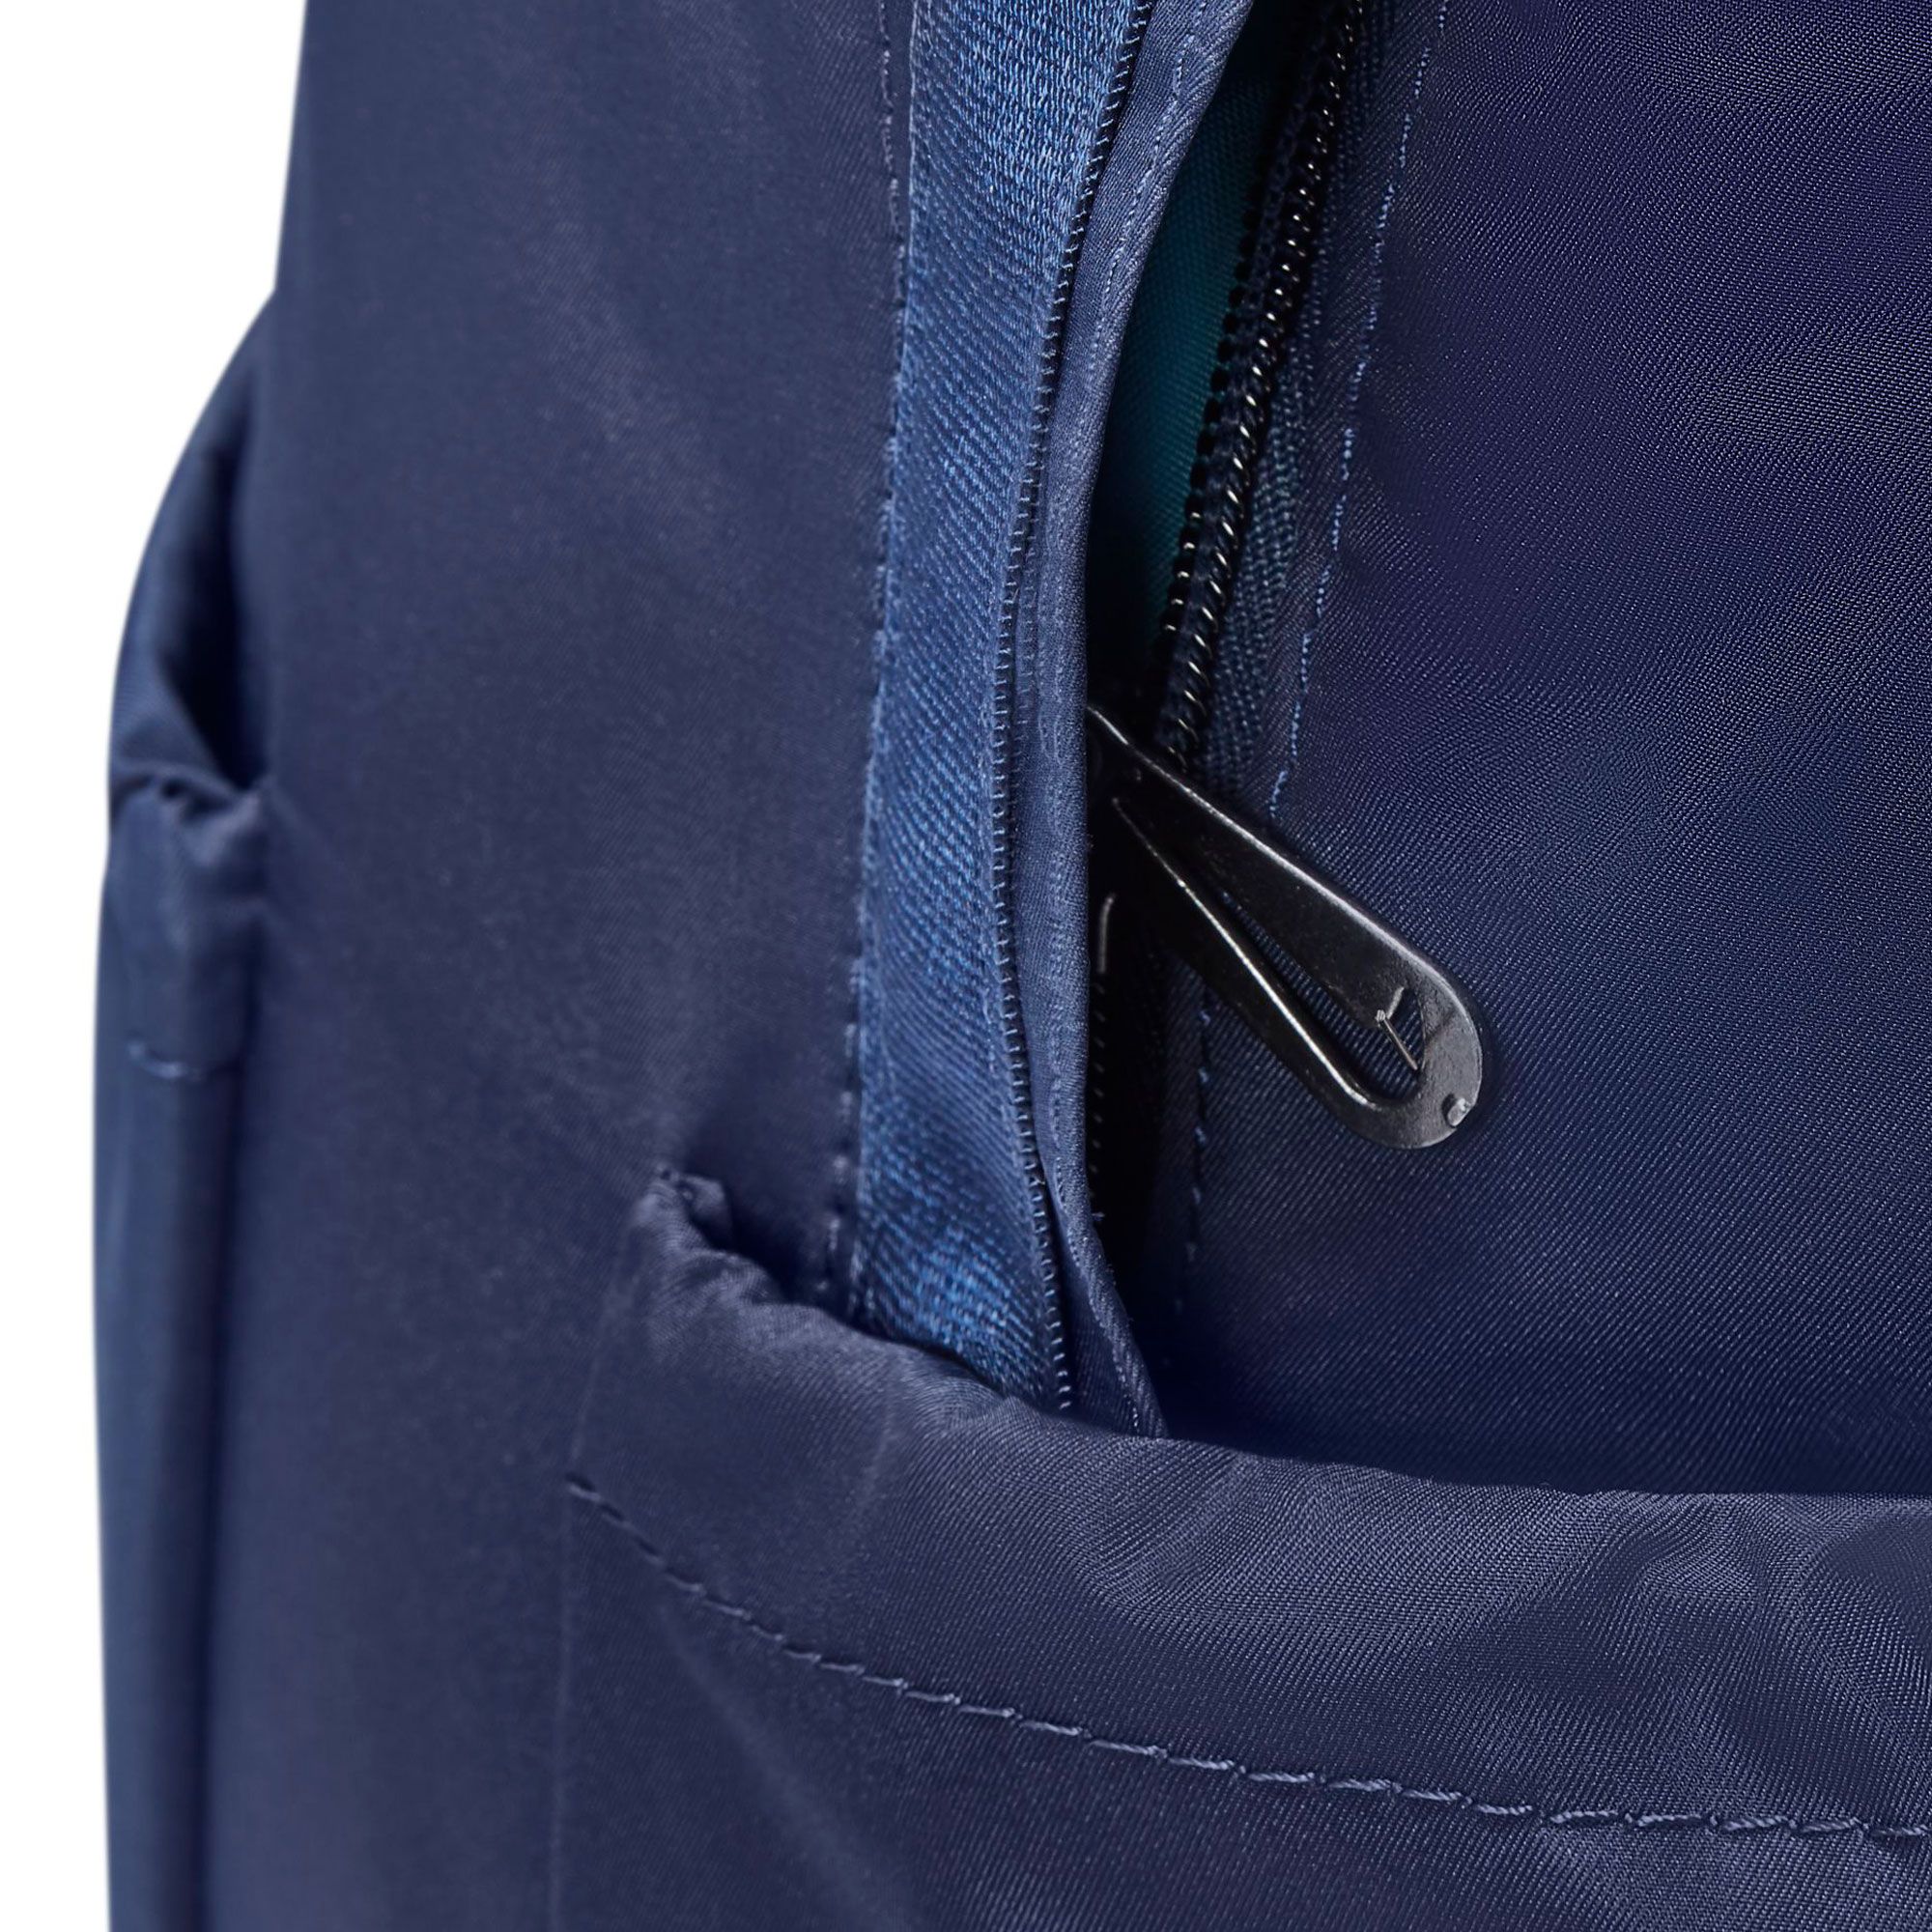 NIKE Sportswear Futura Luxe Mini Backpack CW9335 410 - Shiekh